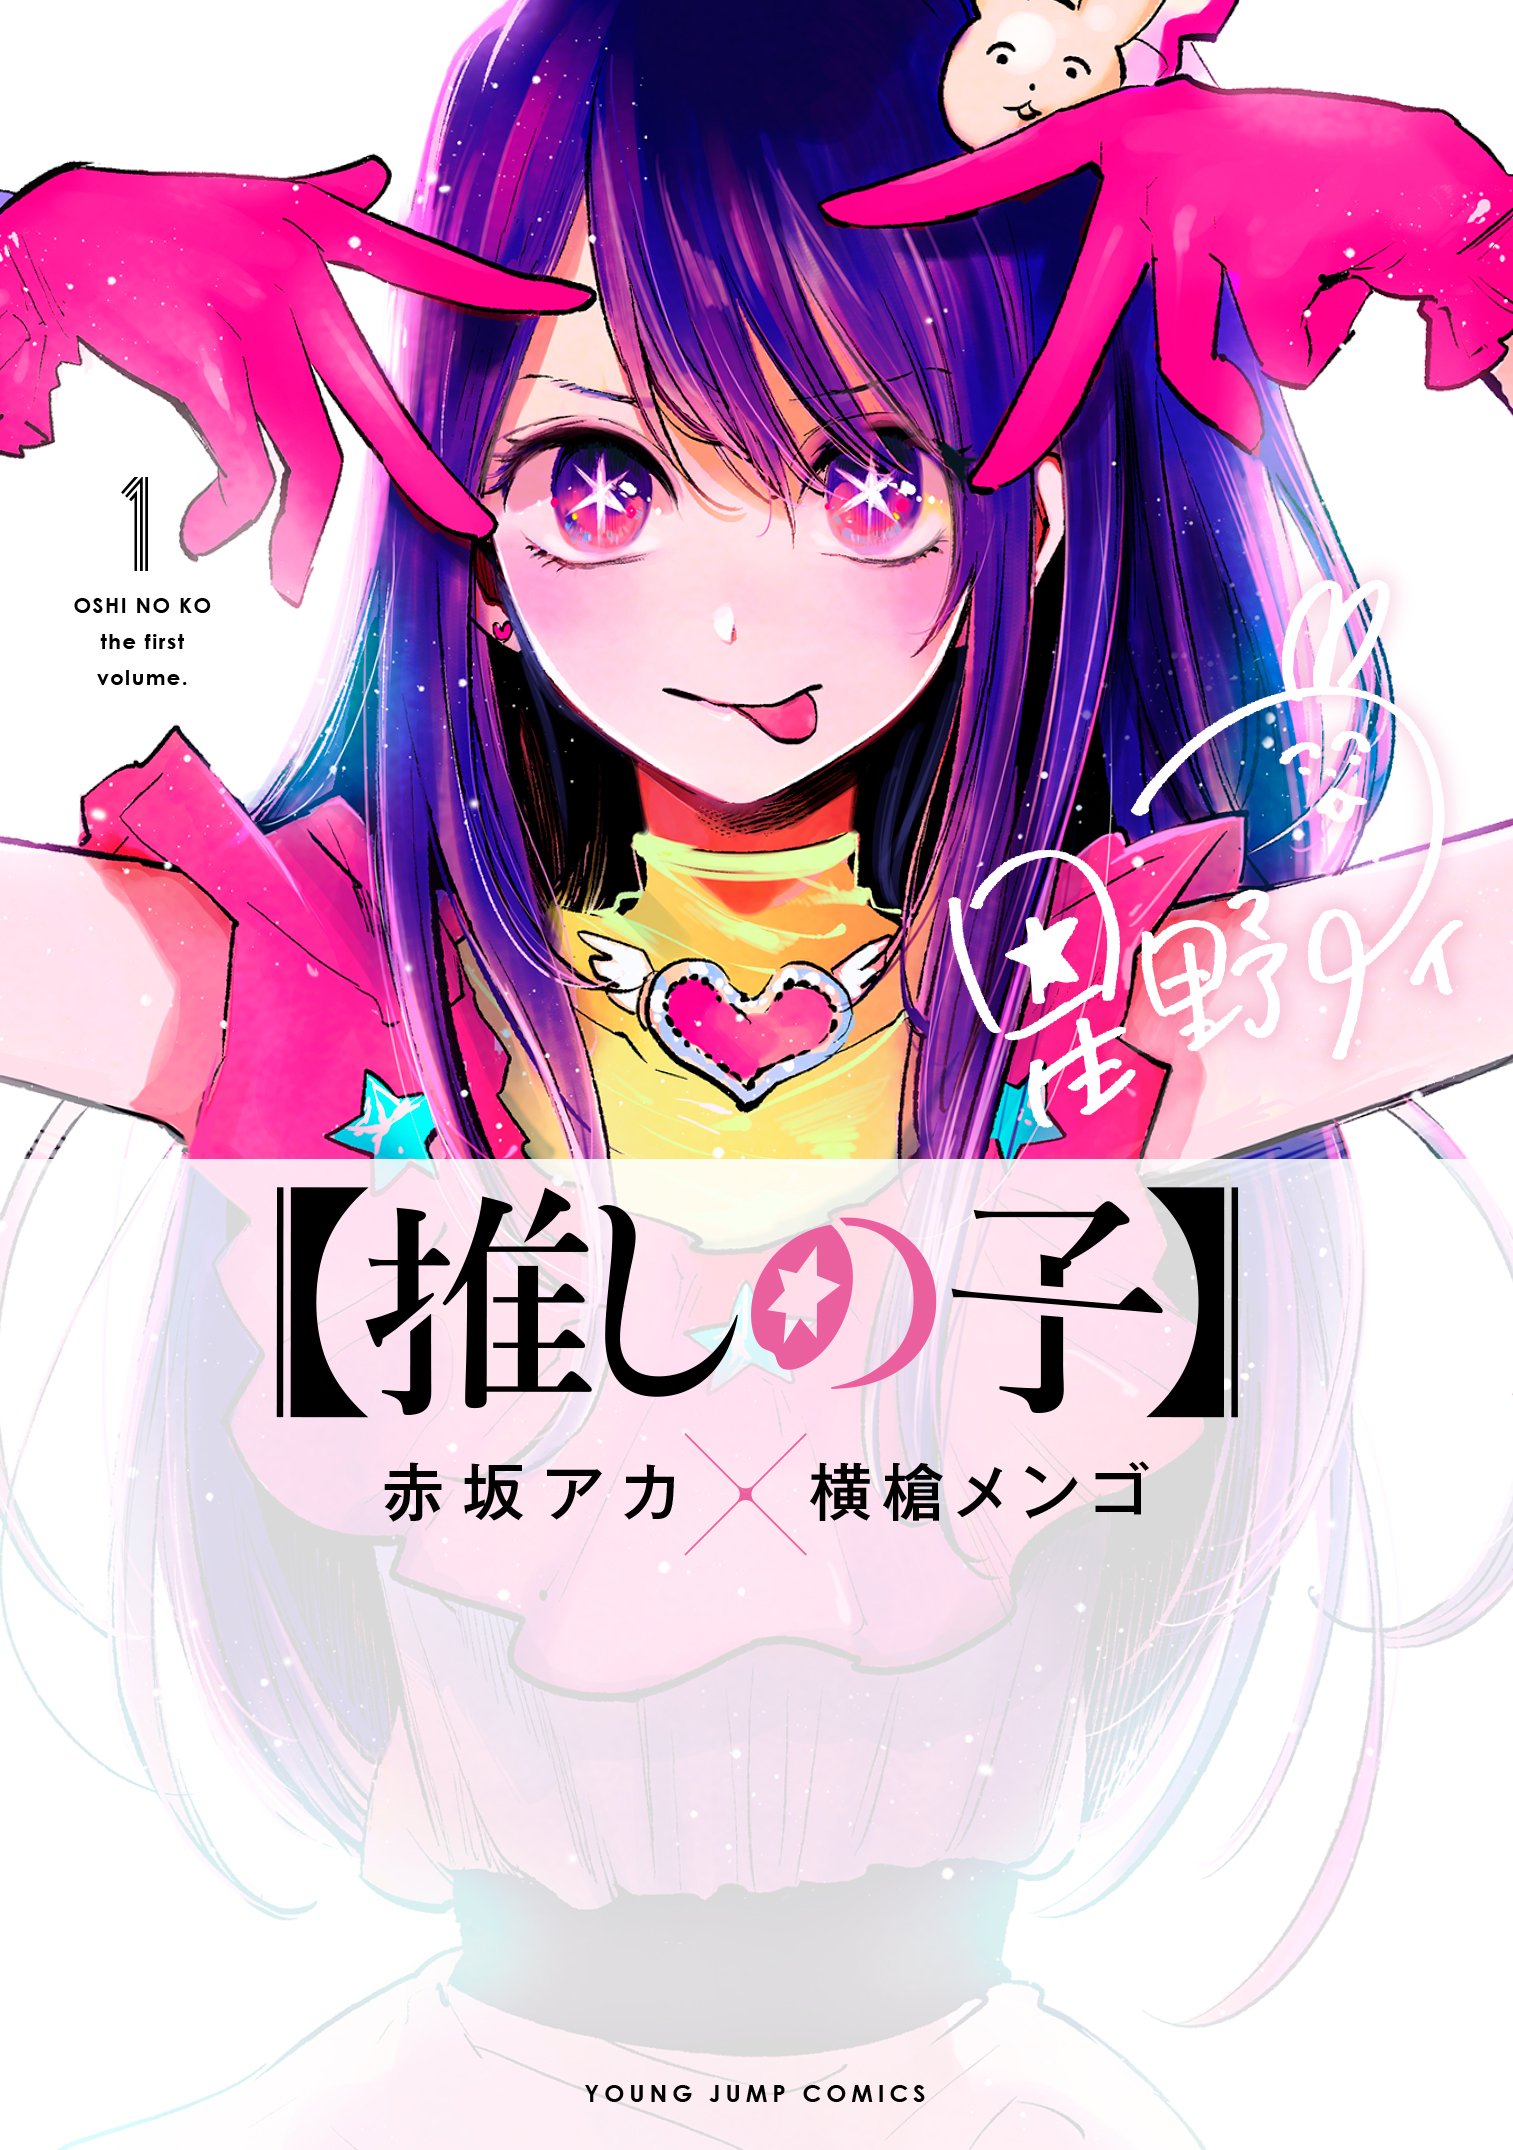 Oshi No Ko Manga Oshi No Ko Wiki Fandom